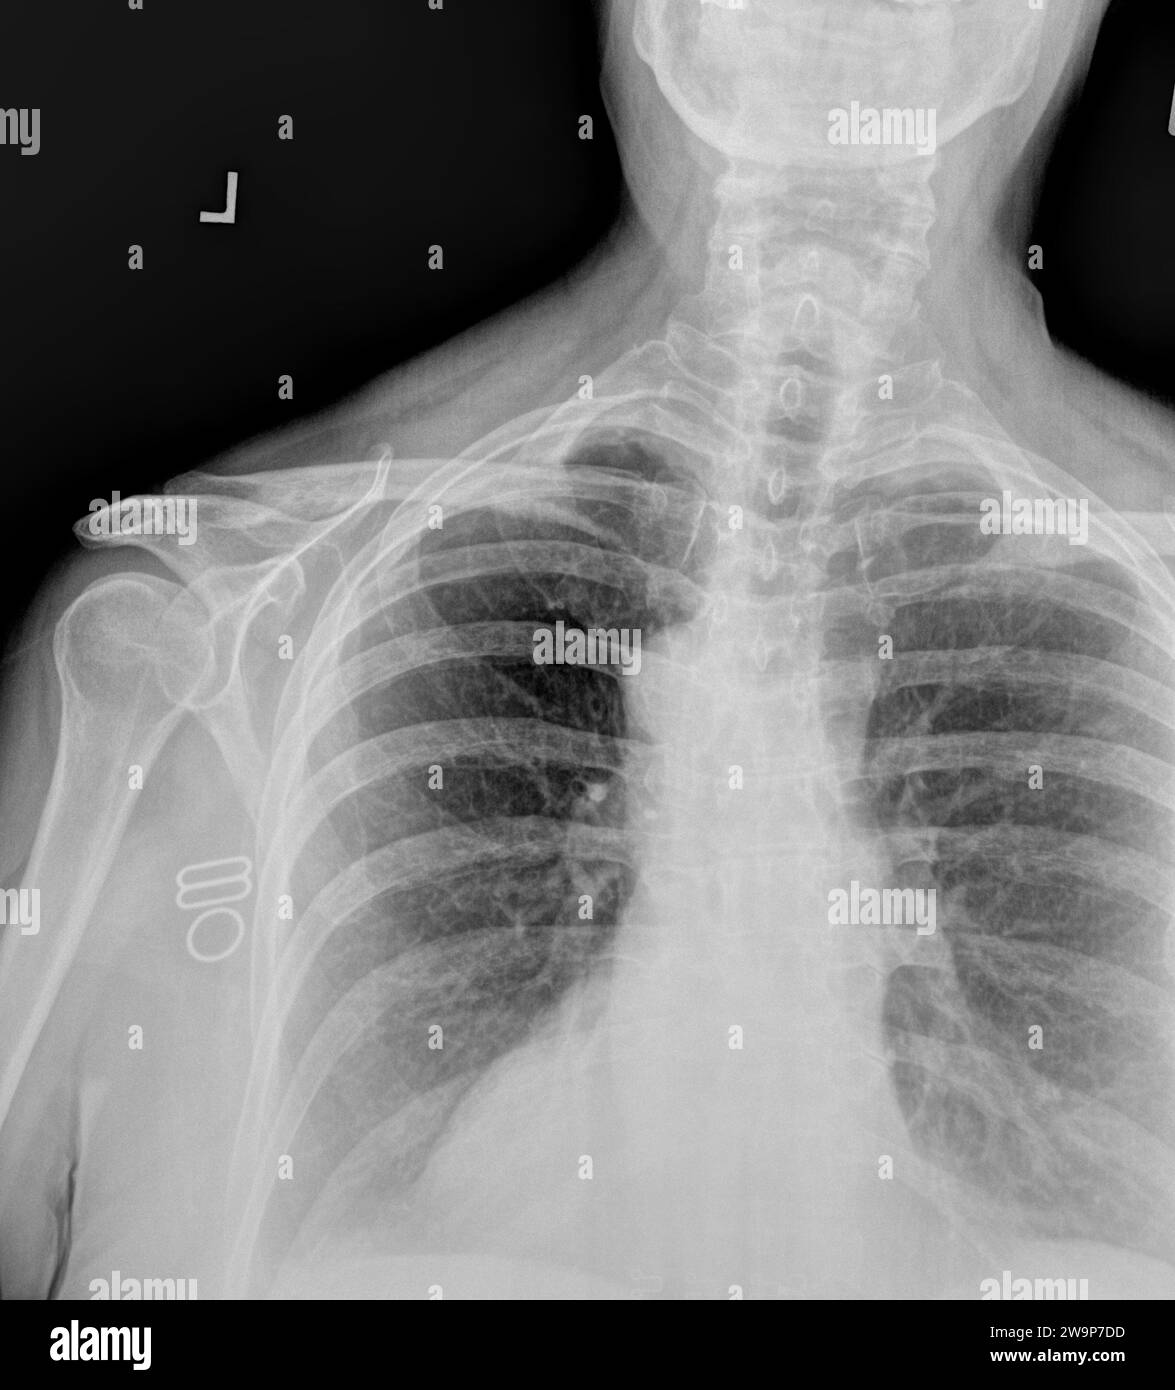 Radiographie ou radiographie d'une vertèbre cervicale adulte normale et de l'épaule gauche. vue antérieure montrant la structure osseuse normale de l'humérus, glénohum crânien Banque D'Images